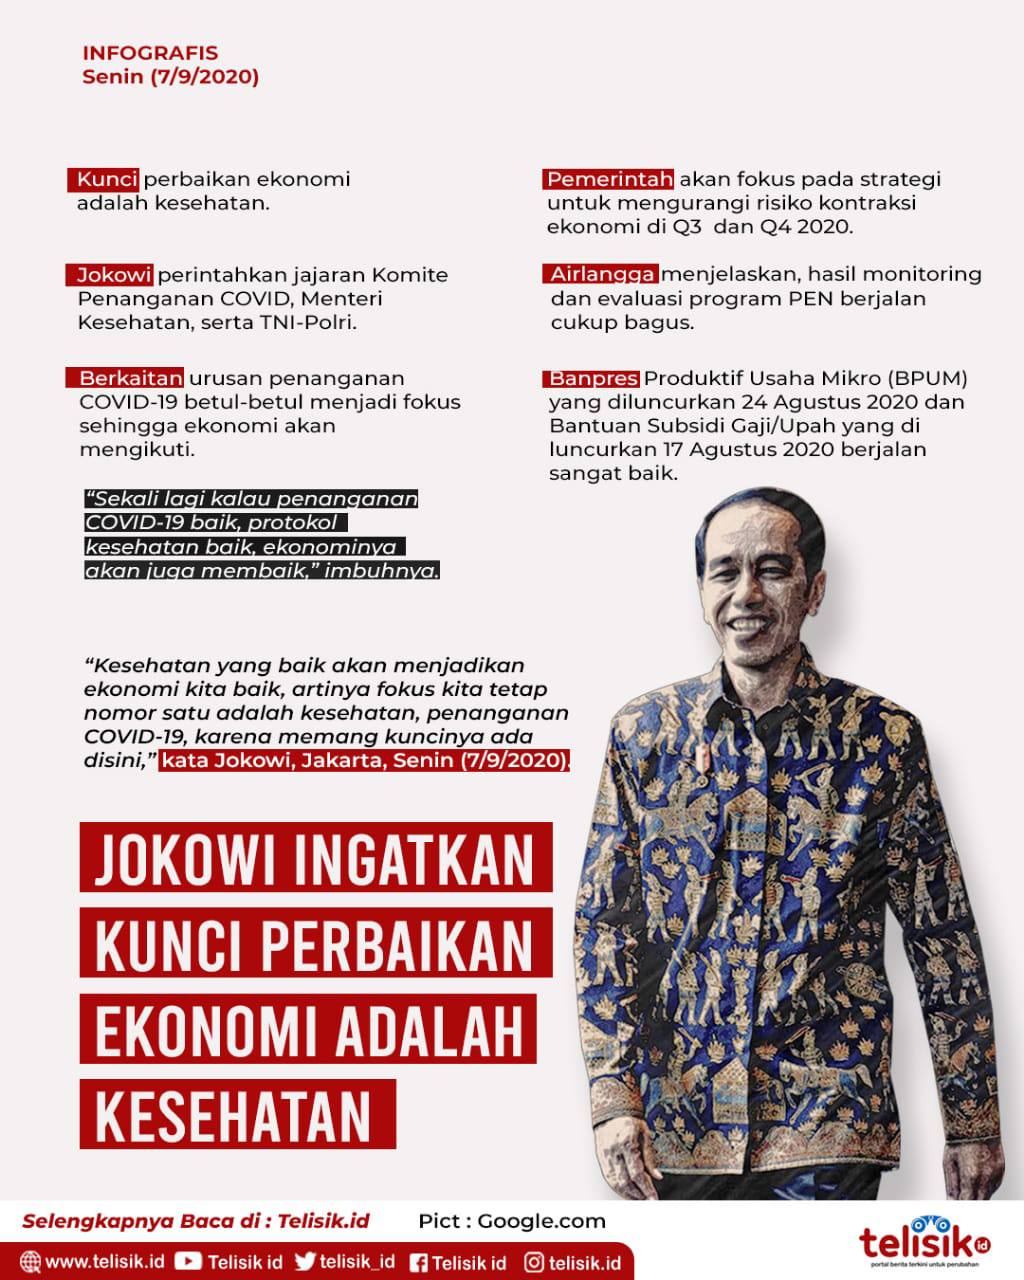 Infografis: Jokowi Ingatkan Kunci Perbaikan Ekonomi adalah Kesehatan